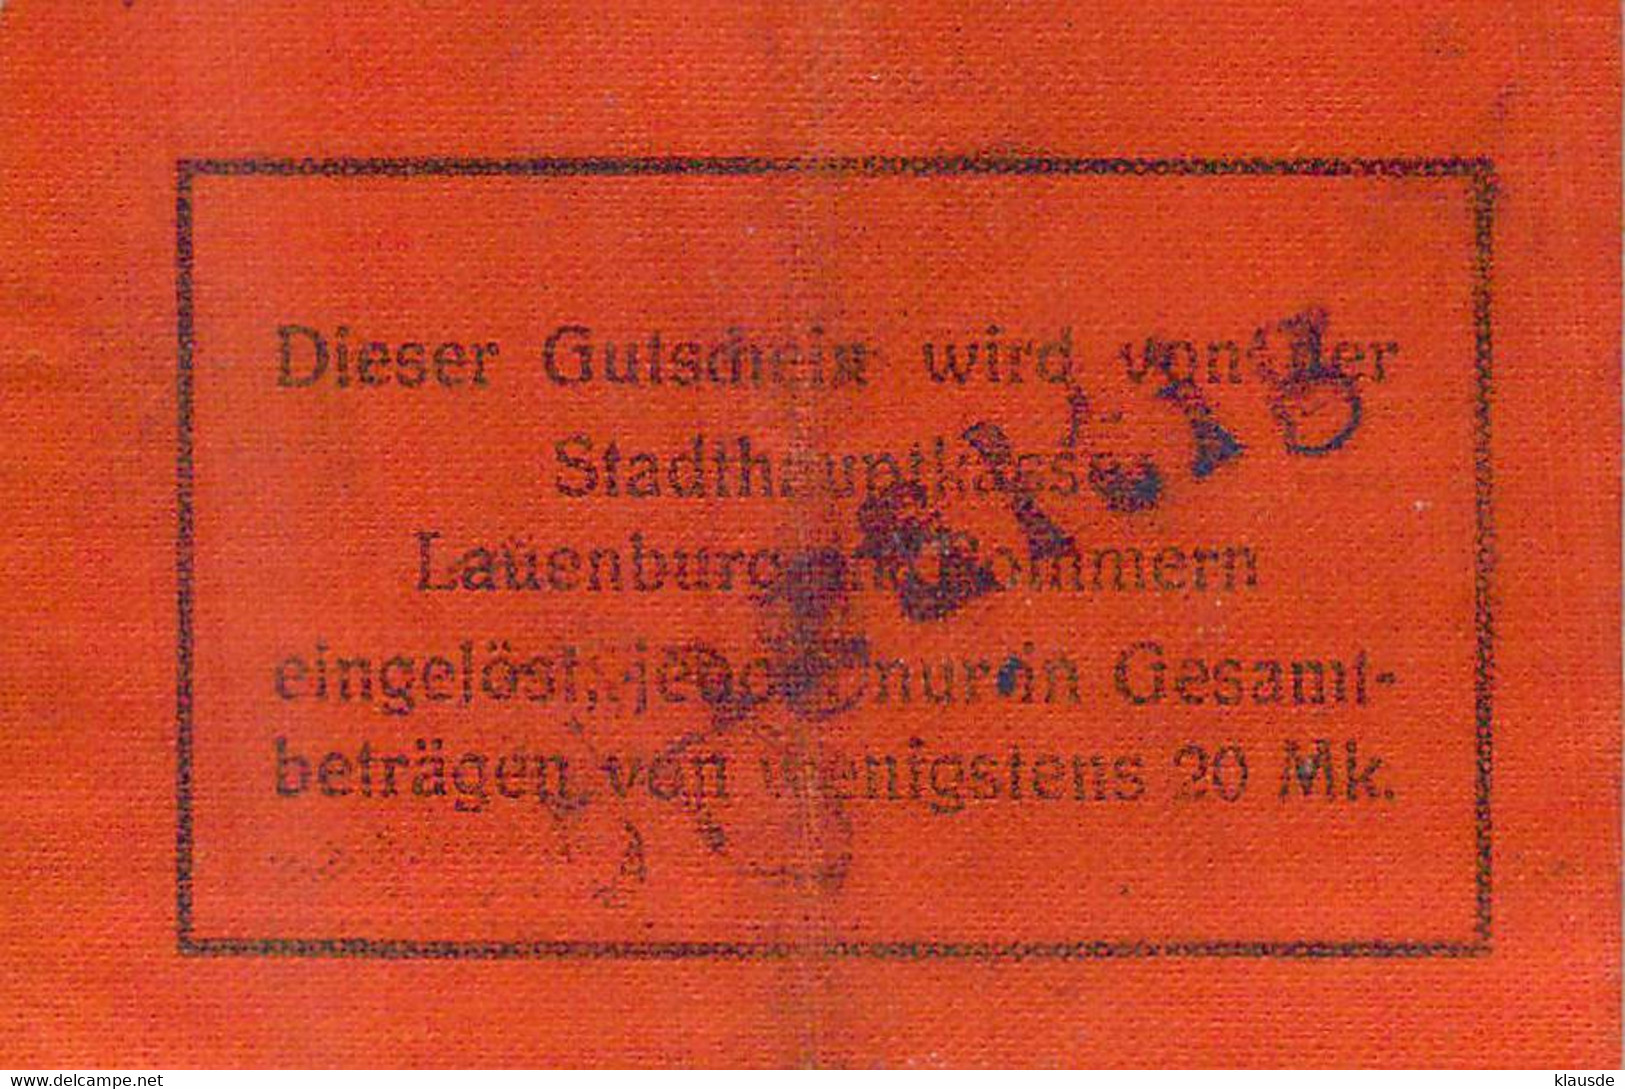 Lauenburg /Pom. (Leborg) Notgeld 1+2 MK Auf Leinenpapier - WWI